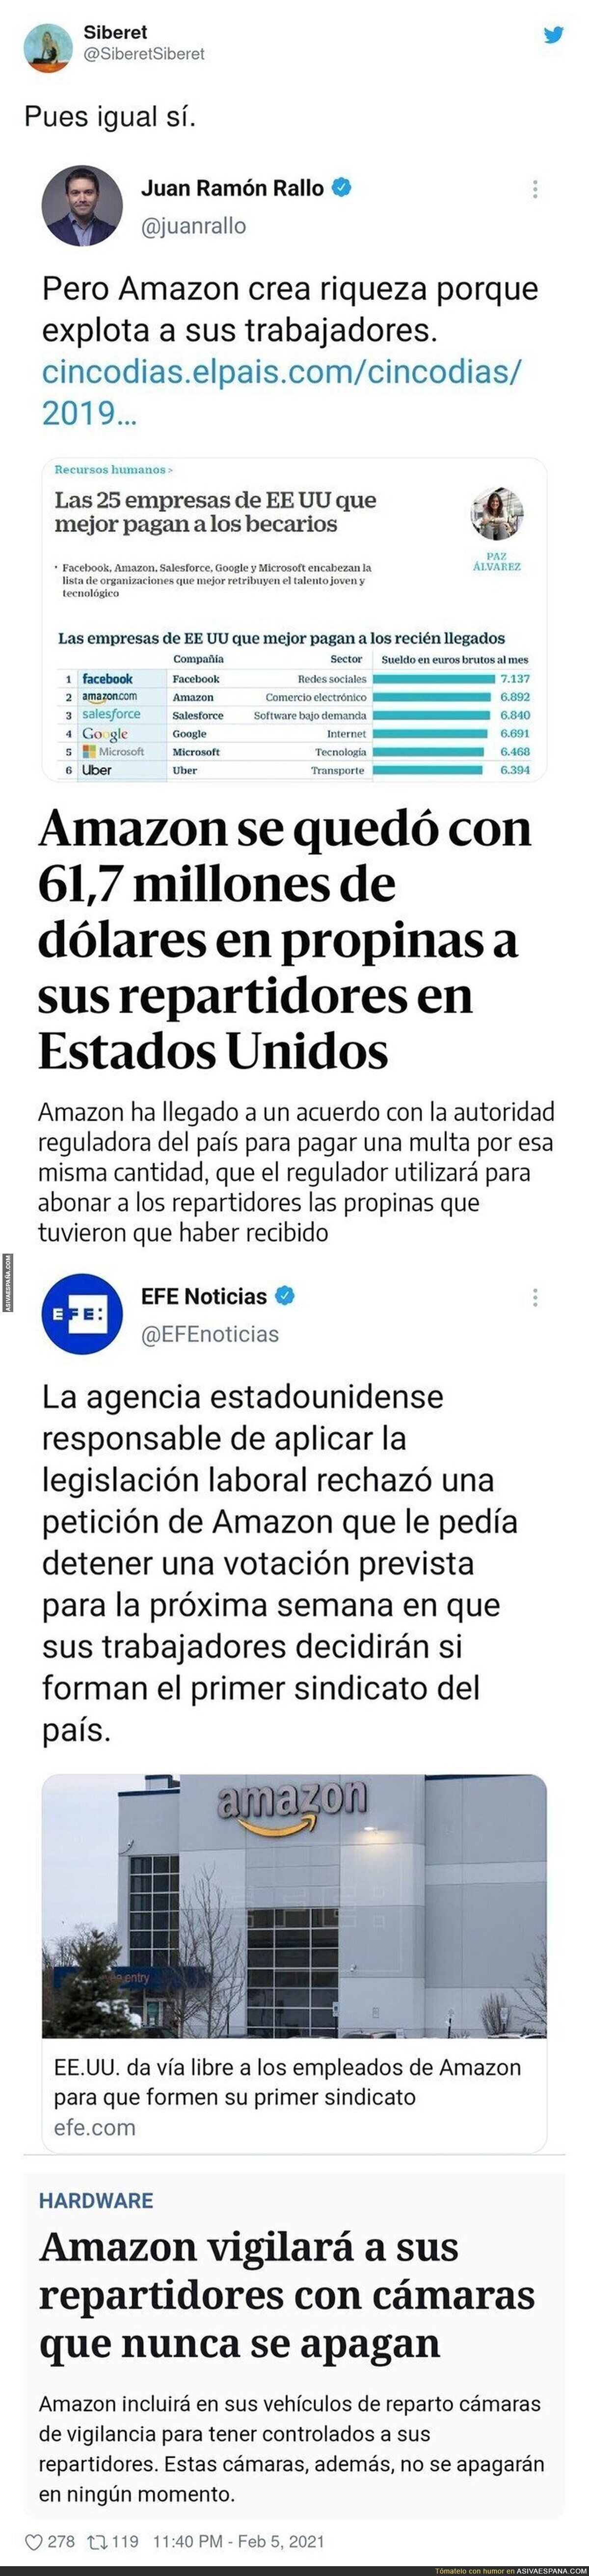 Amazon y la más que evidente explotación a sus trabajadores